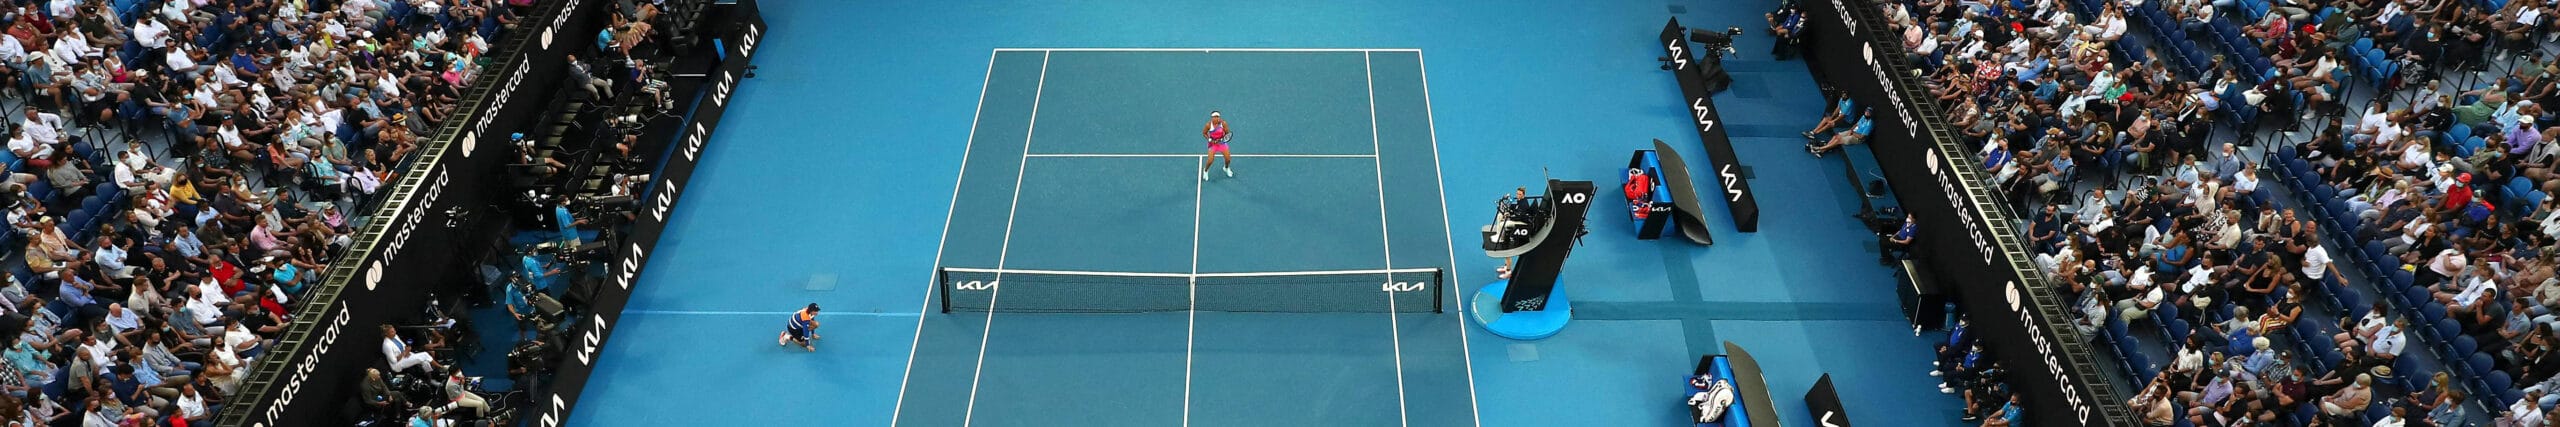 Australian Open: Djokovic ist wohl wieder nicht zu schlagen